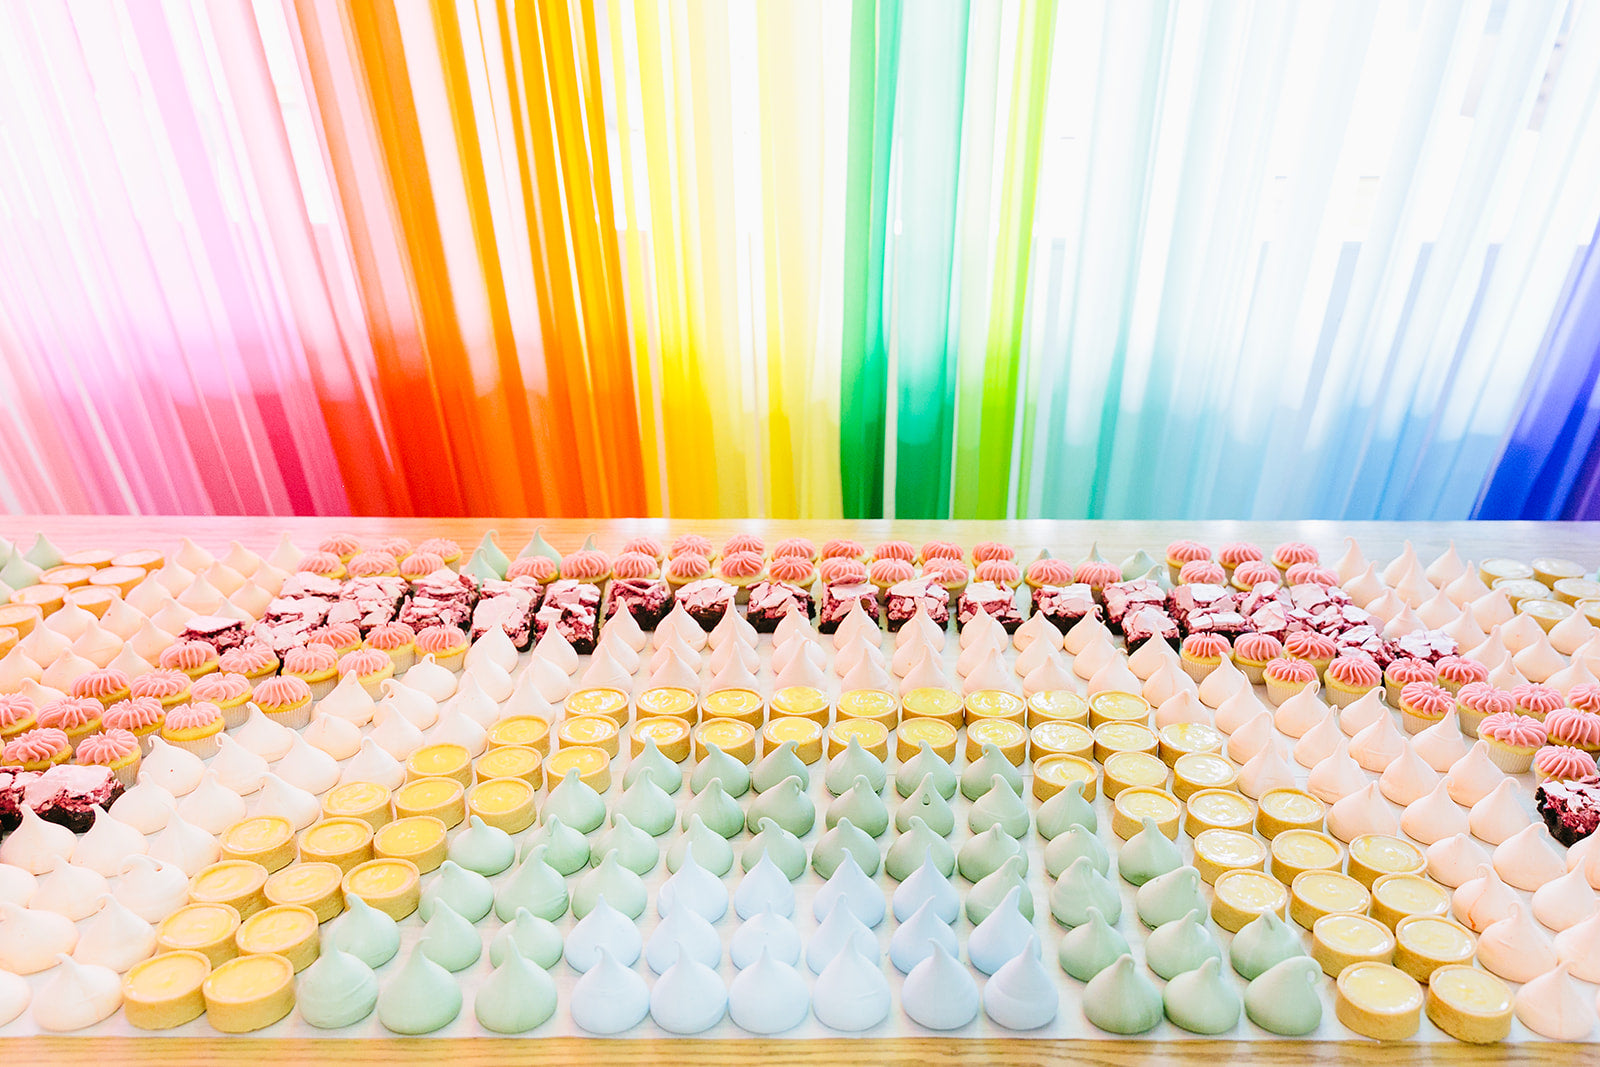 Rainbow treats set out for a rainbow dessert table idea.